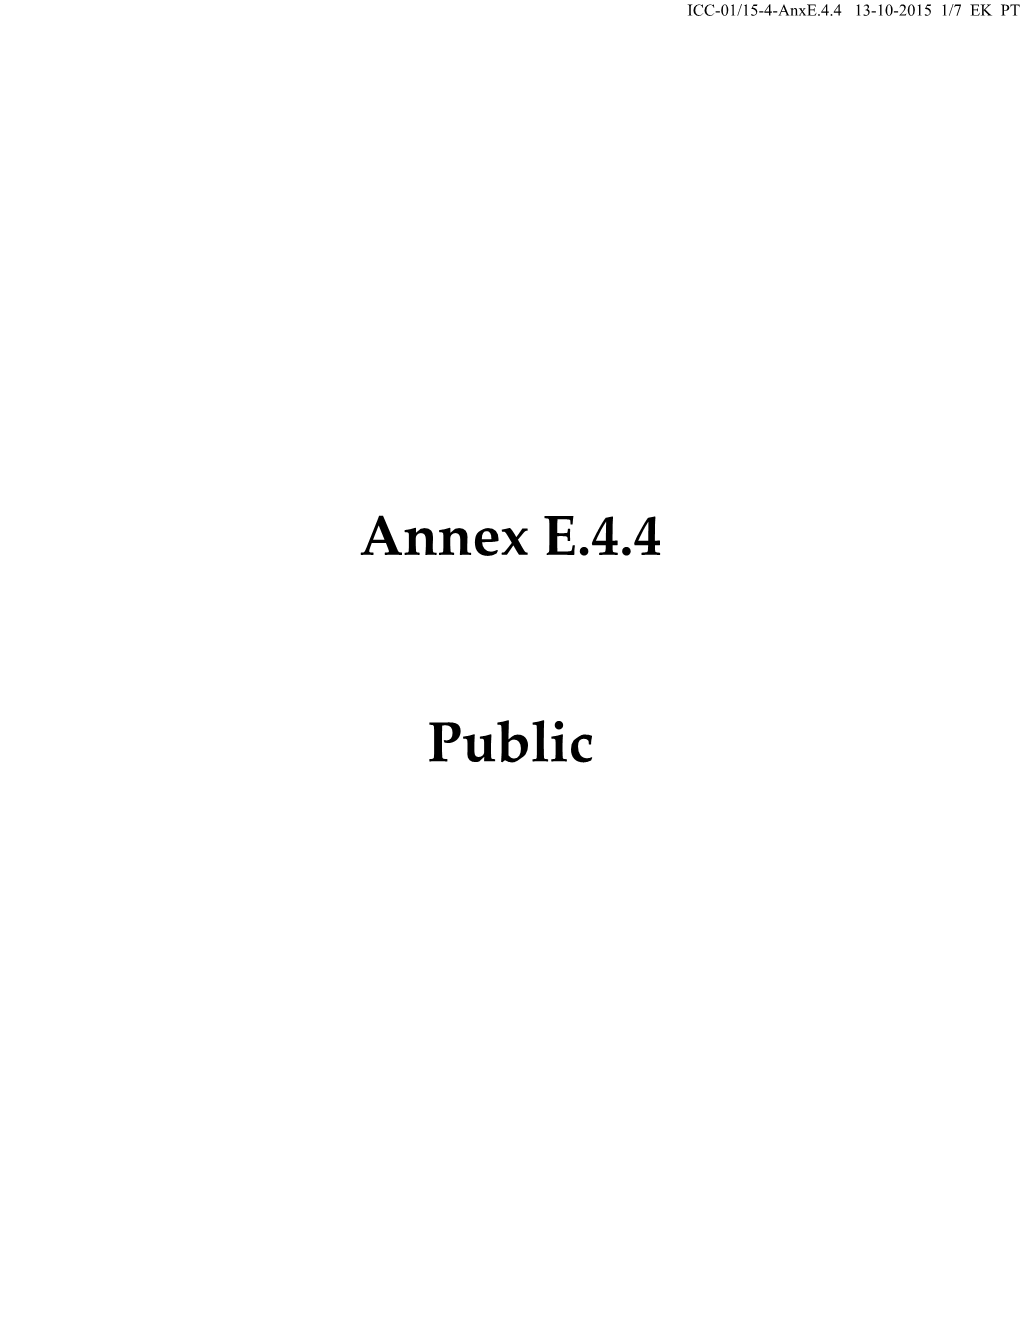 Annex E.4.4 Public